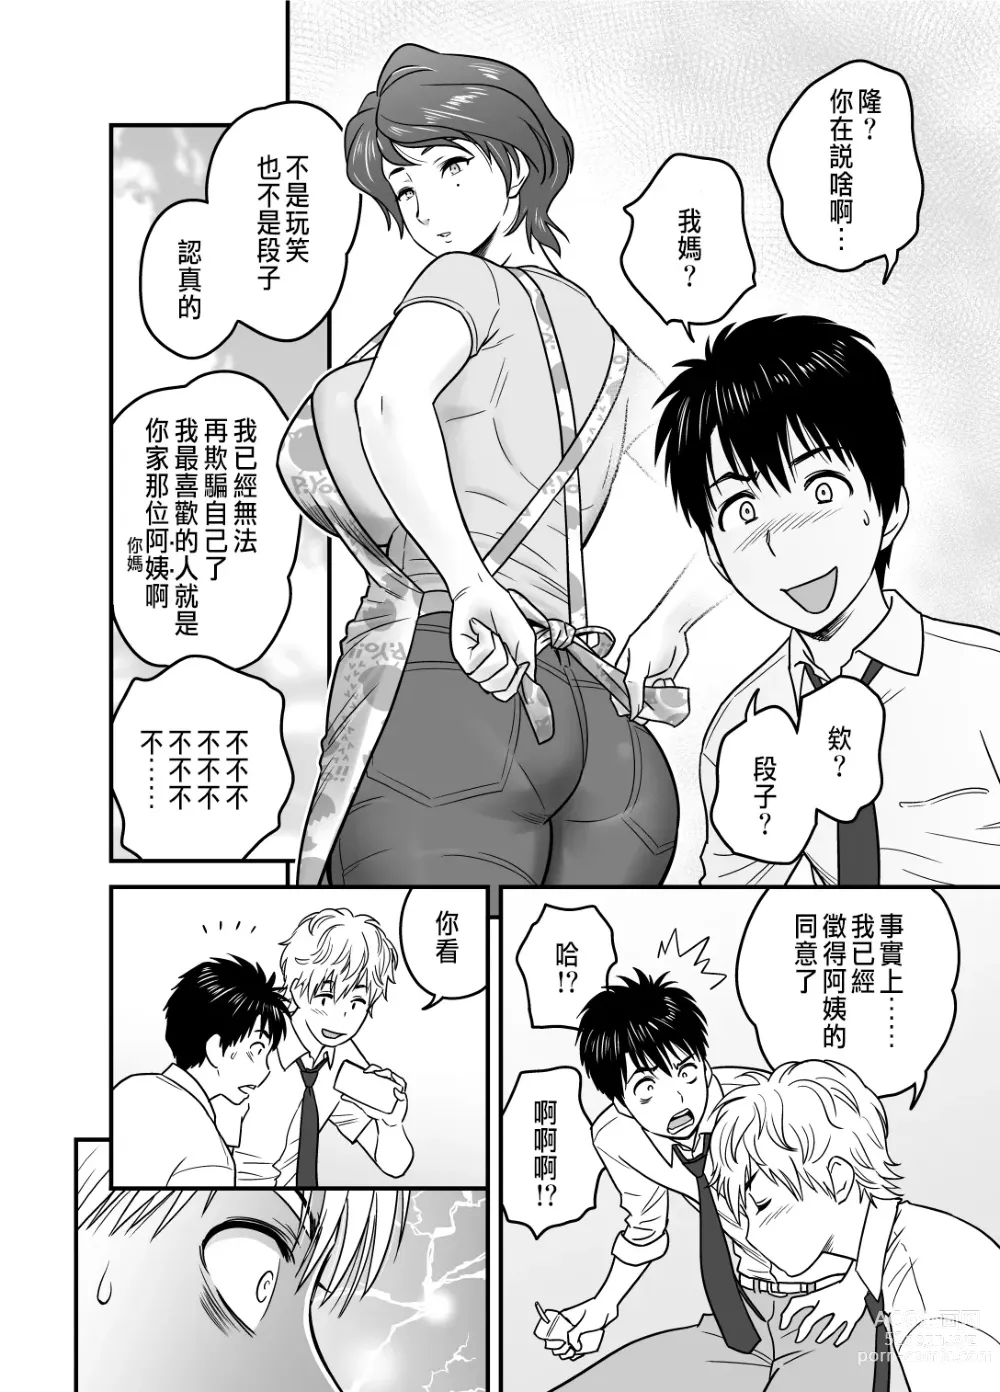 Page 4 of manga 母が友カノになったので1~3